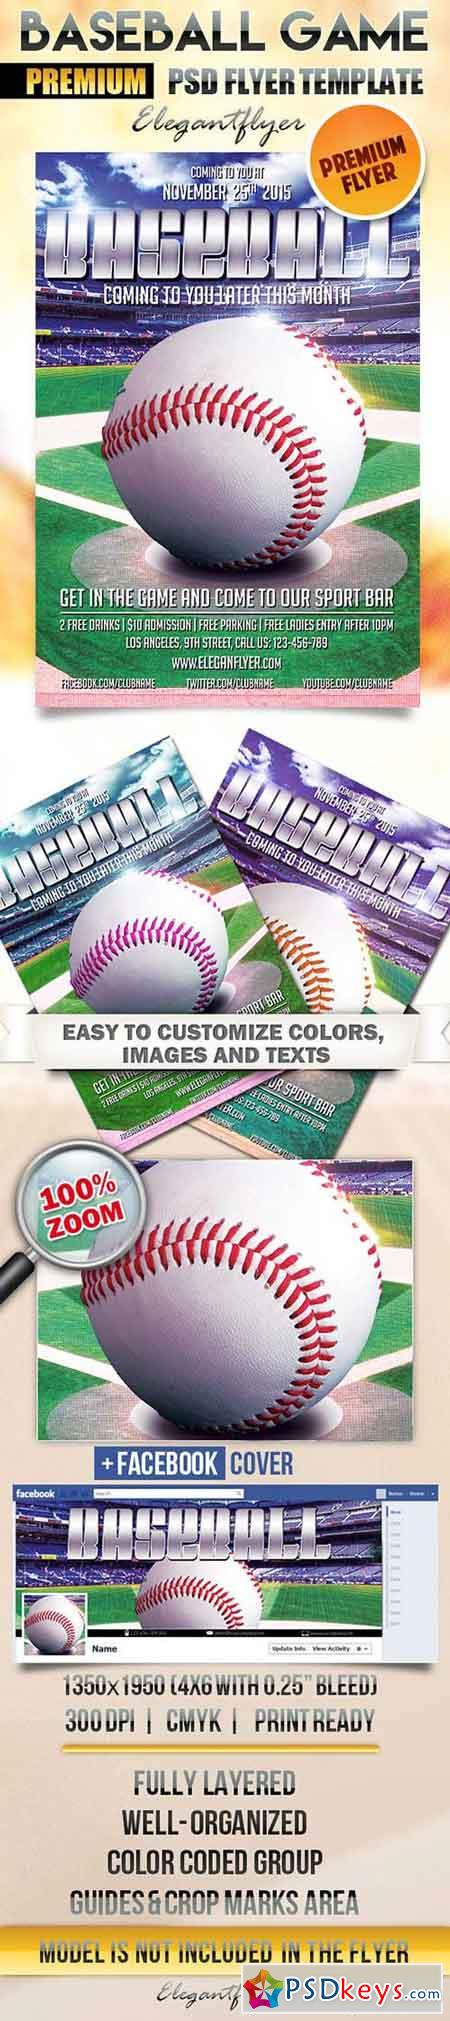 Baseball Game Flyer PSD Template + Facebook Cover